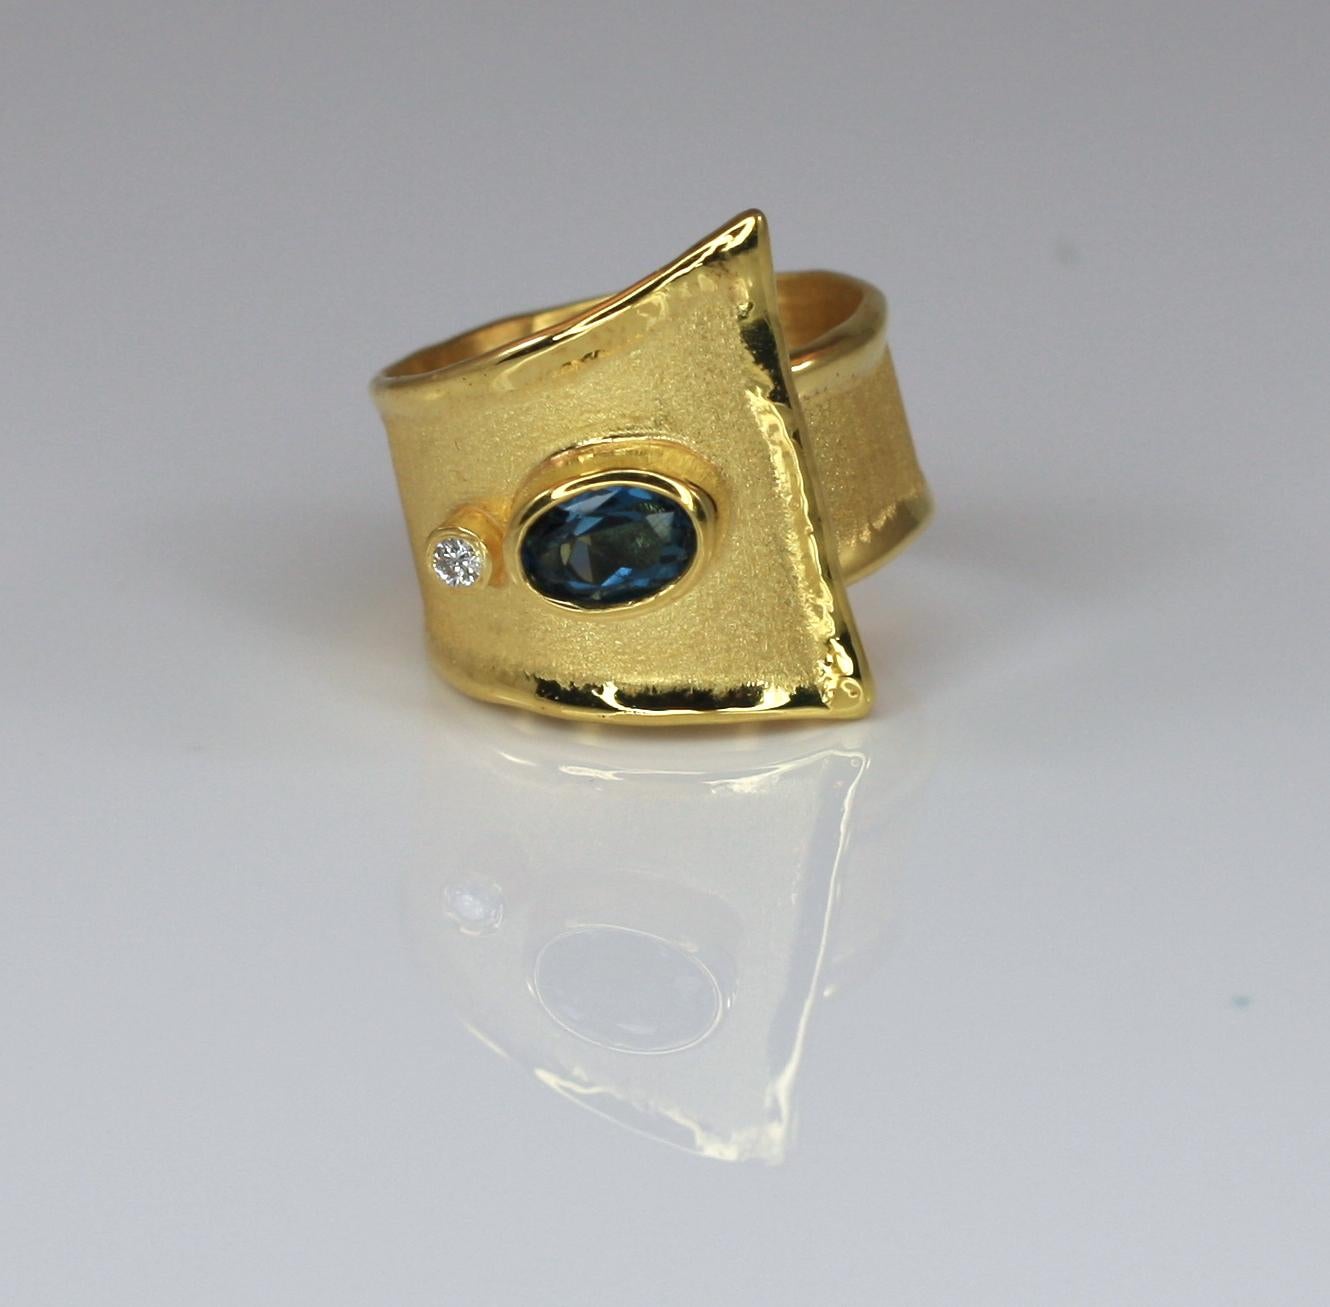 Yianni Creations handwerklich hergestellter Ring aus 18 Karat Gelbgold in Griechenland. Glänzende Flüssigkeitsränder kontrastieren mit der gebürsteten Struktur der Oberfläche. Dieser geometrische Ring zeigt einen 1,60 Karat schweren Londoner